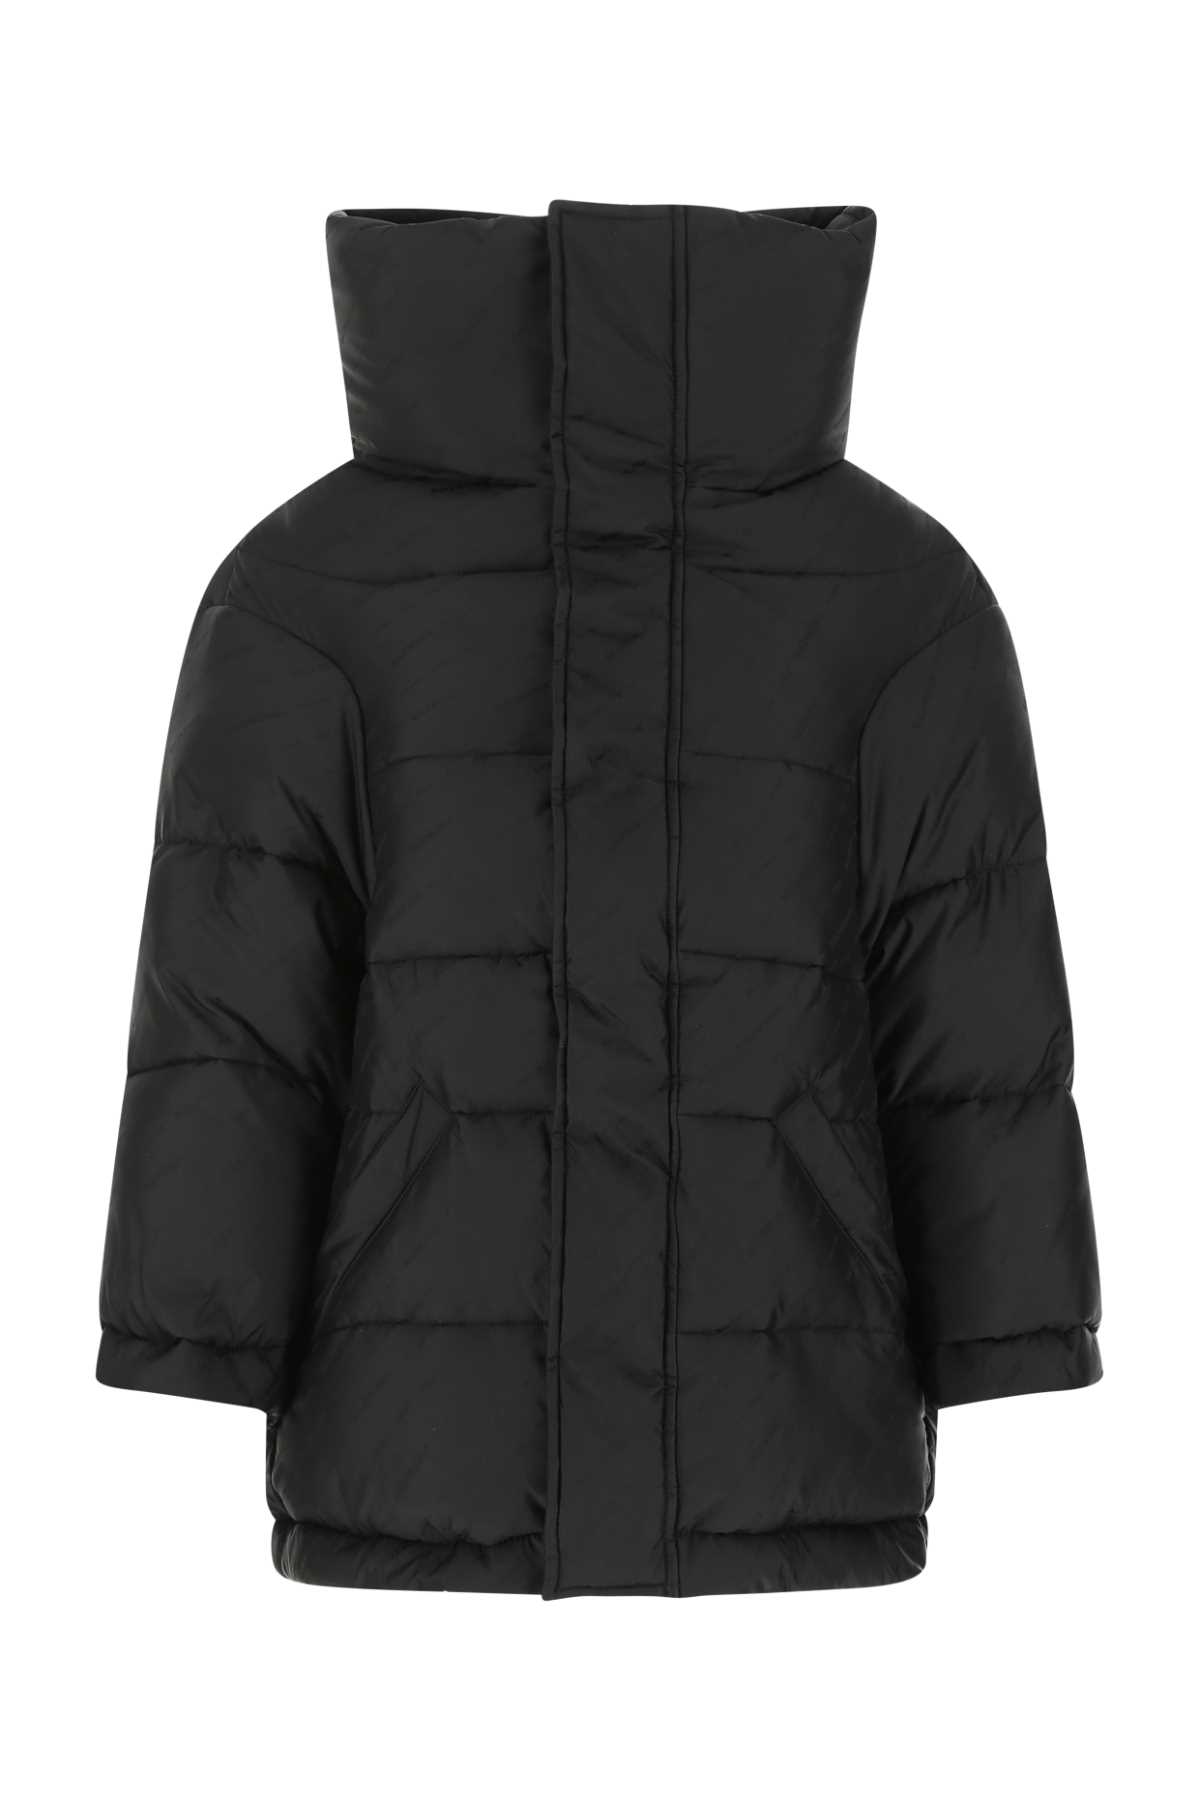 Balenciaga Black Nylon Padded Jacket